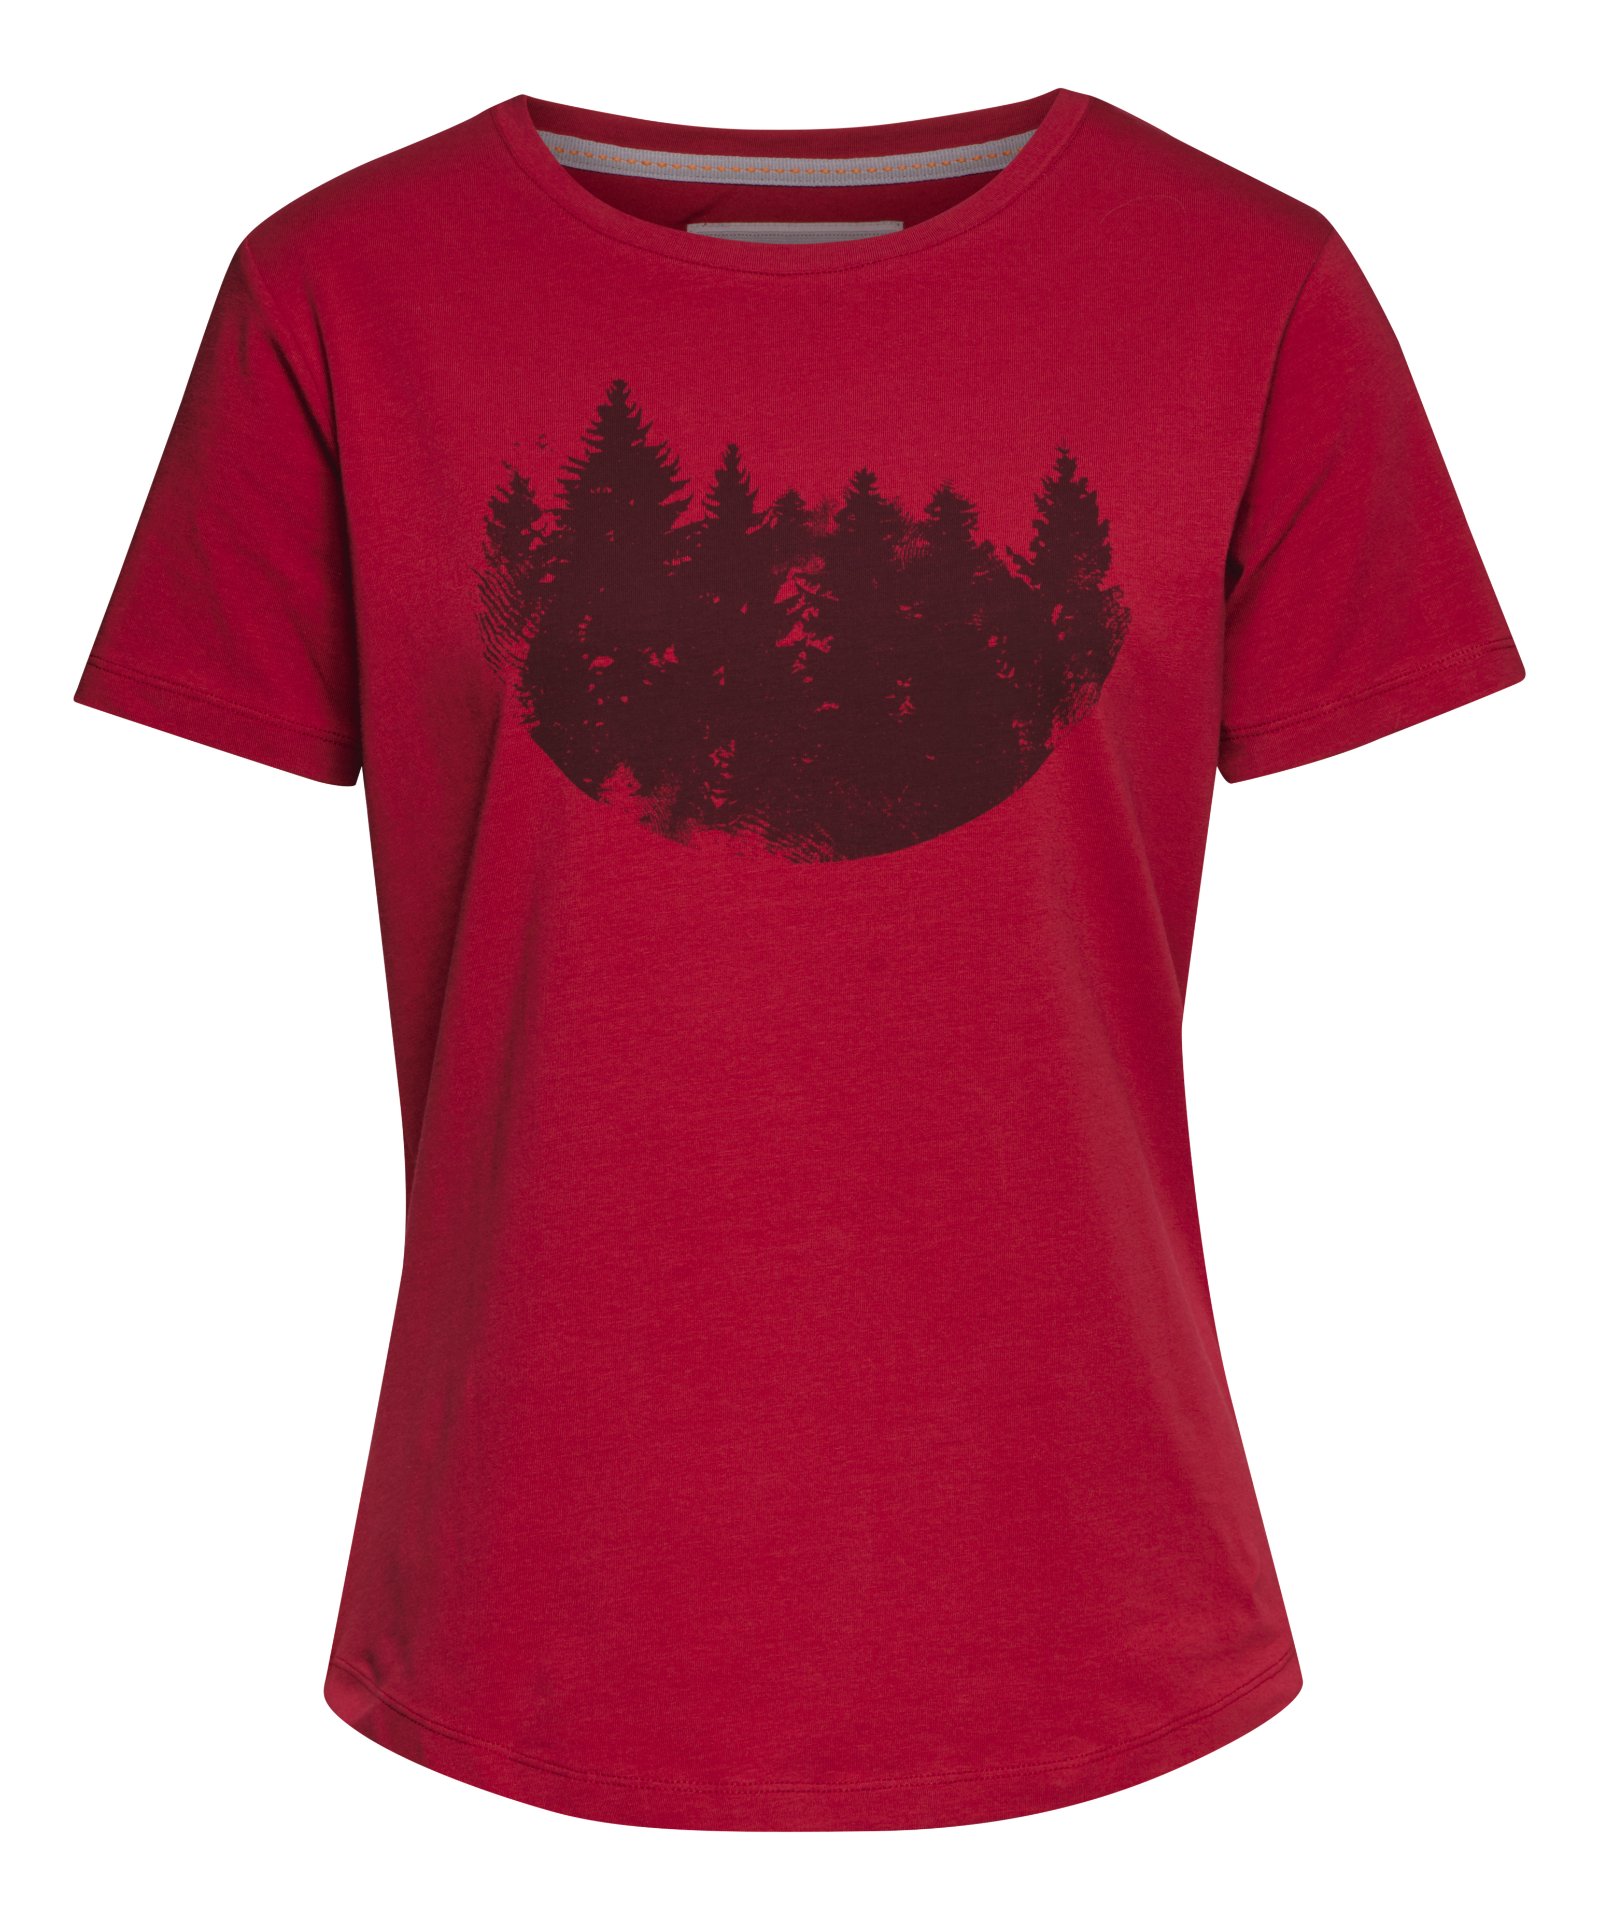 STIHL T-Shirt FIR FOREST Damen rot ,Gr. XS